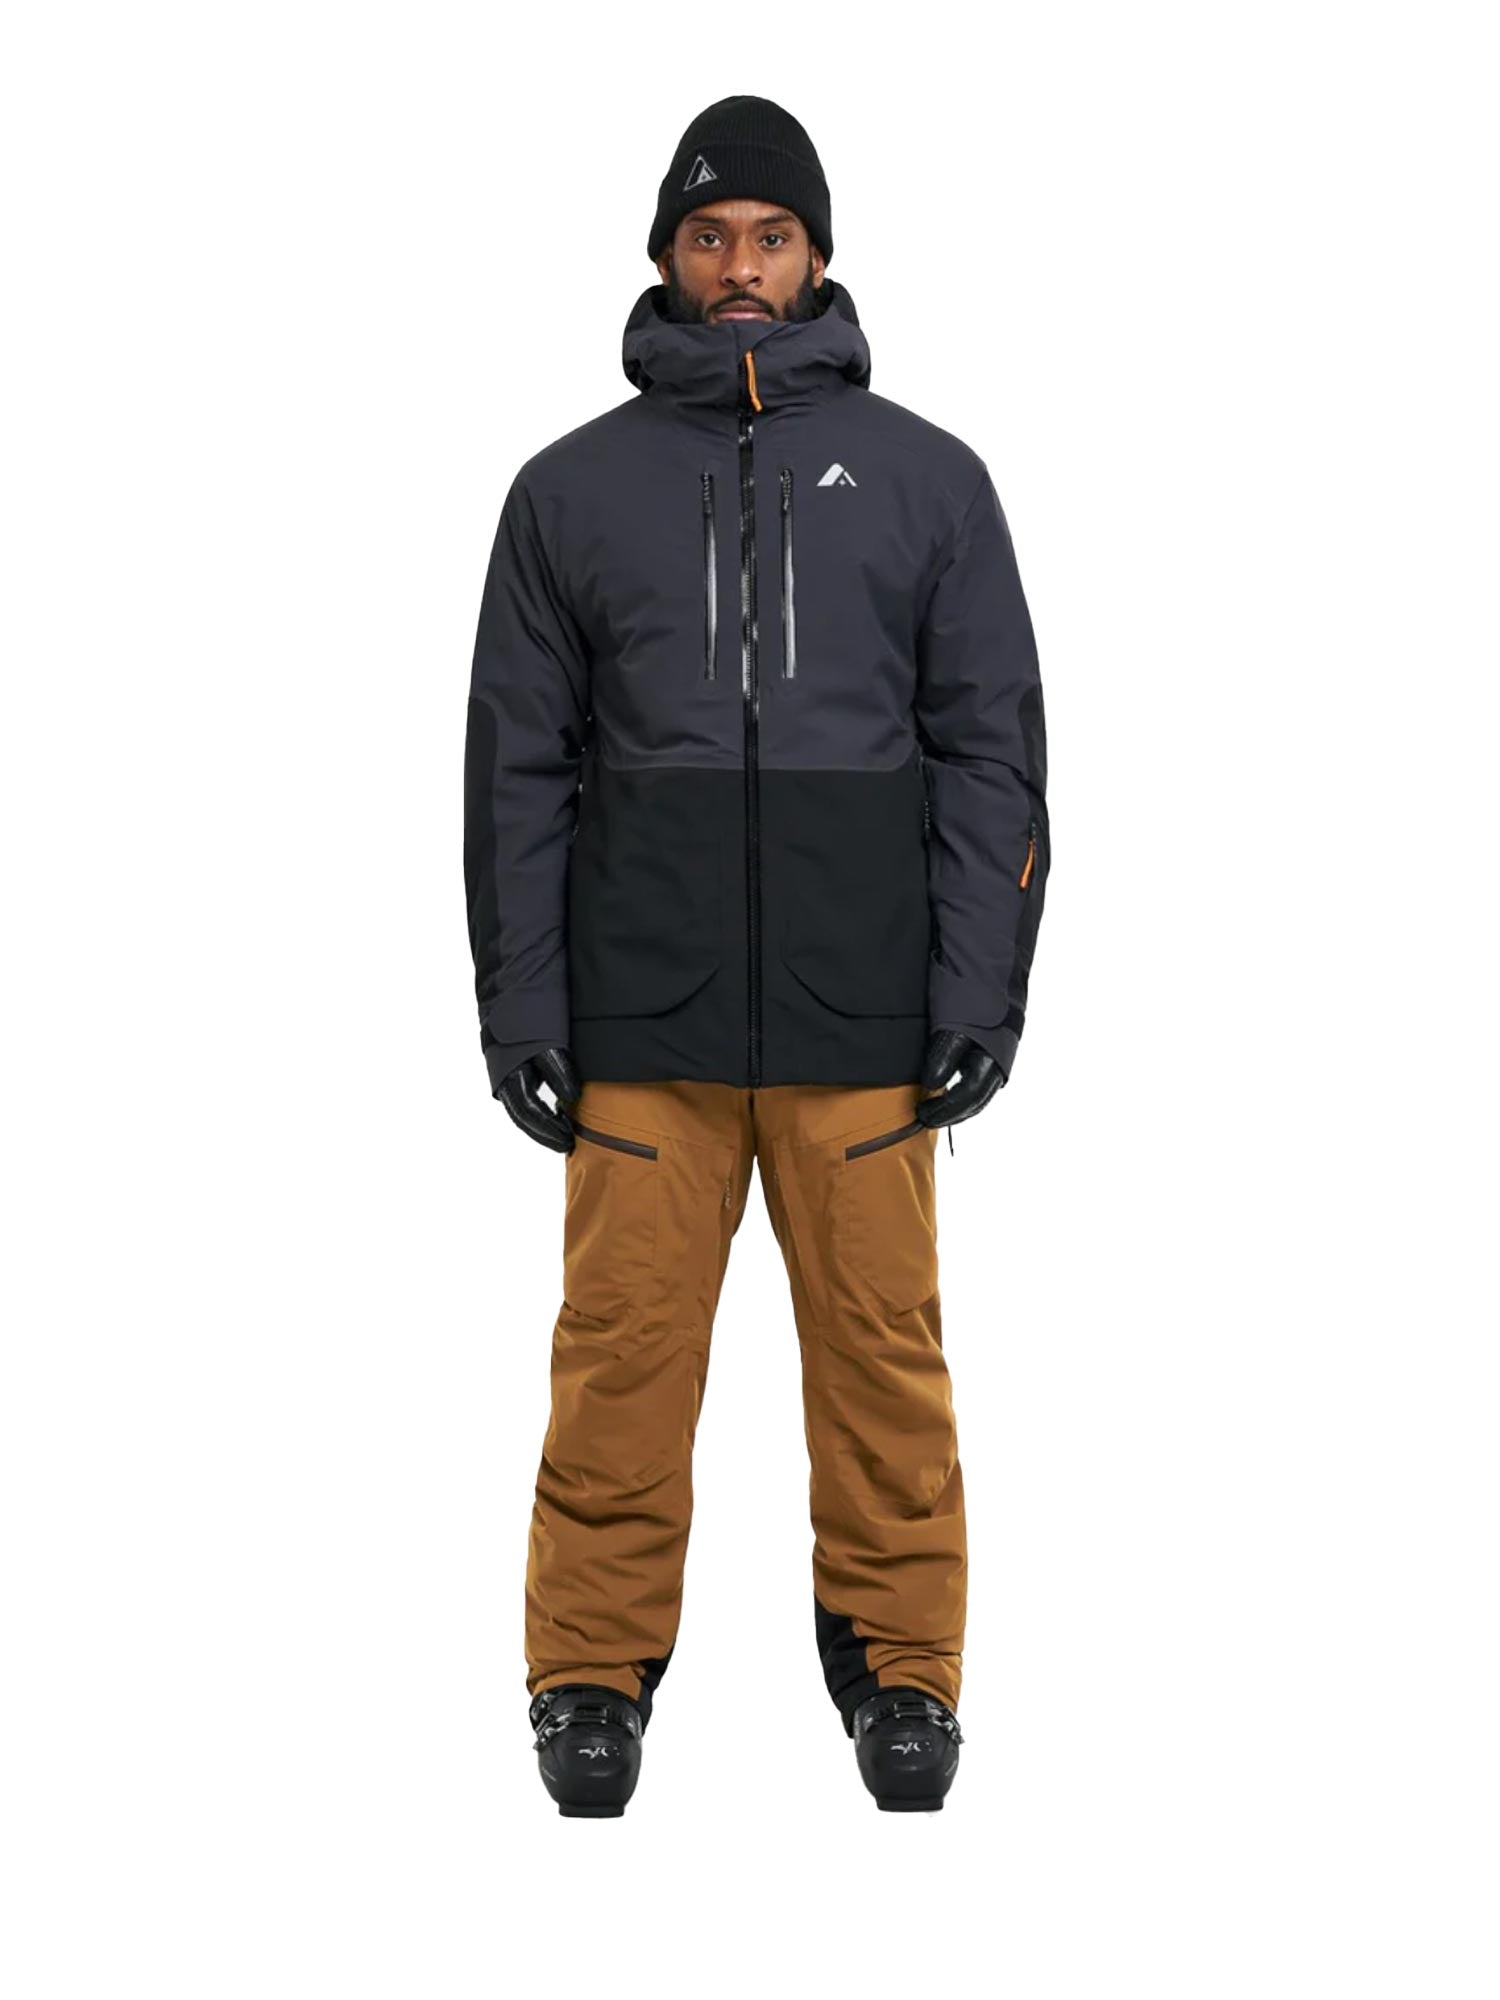 men's Orage Alaskan ski jacket, black and dark gray